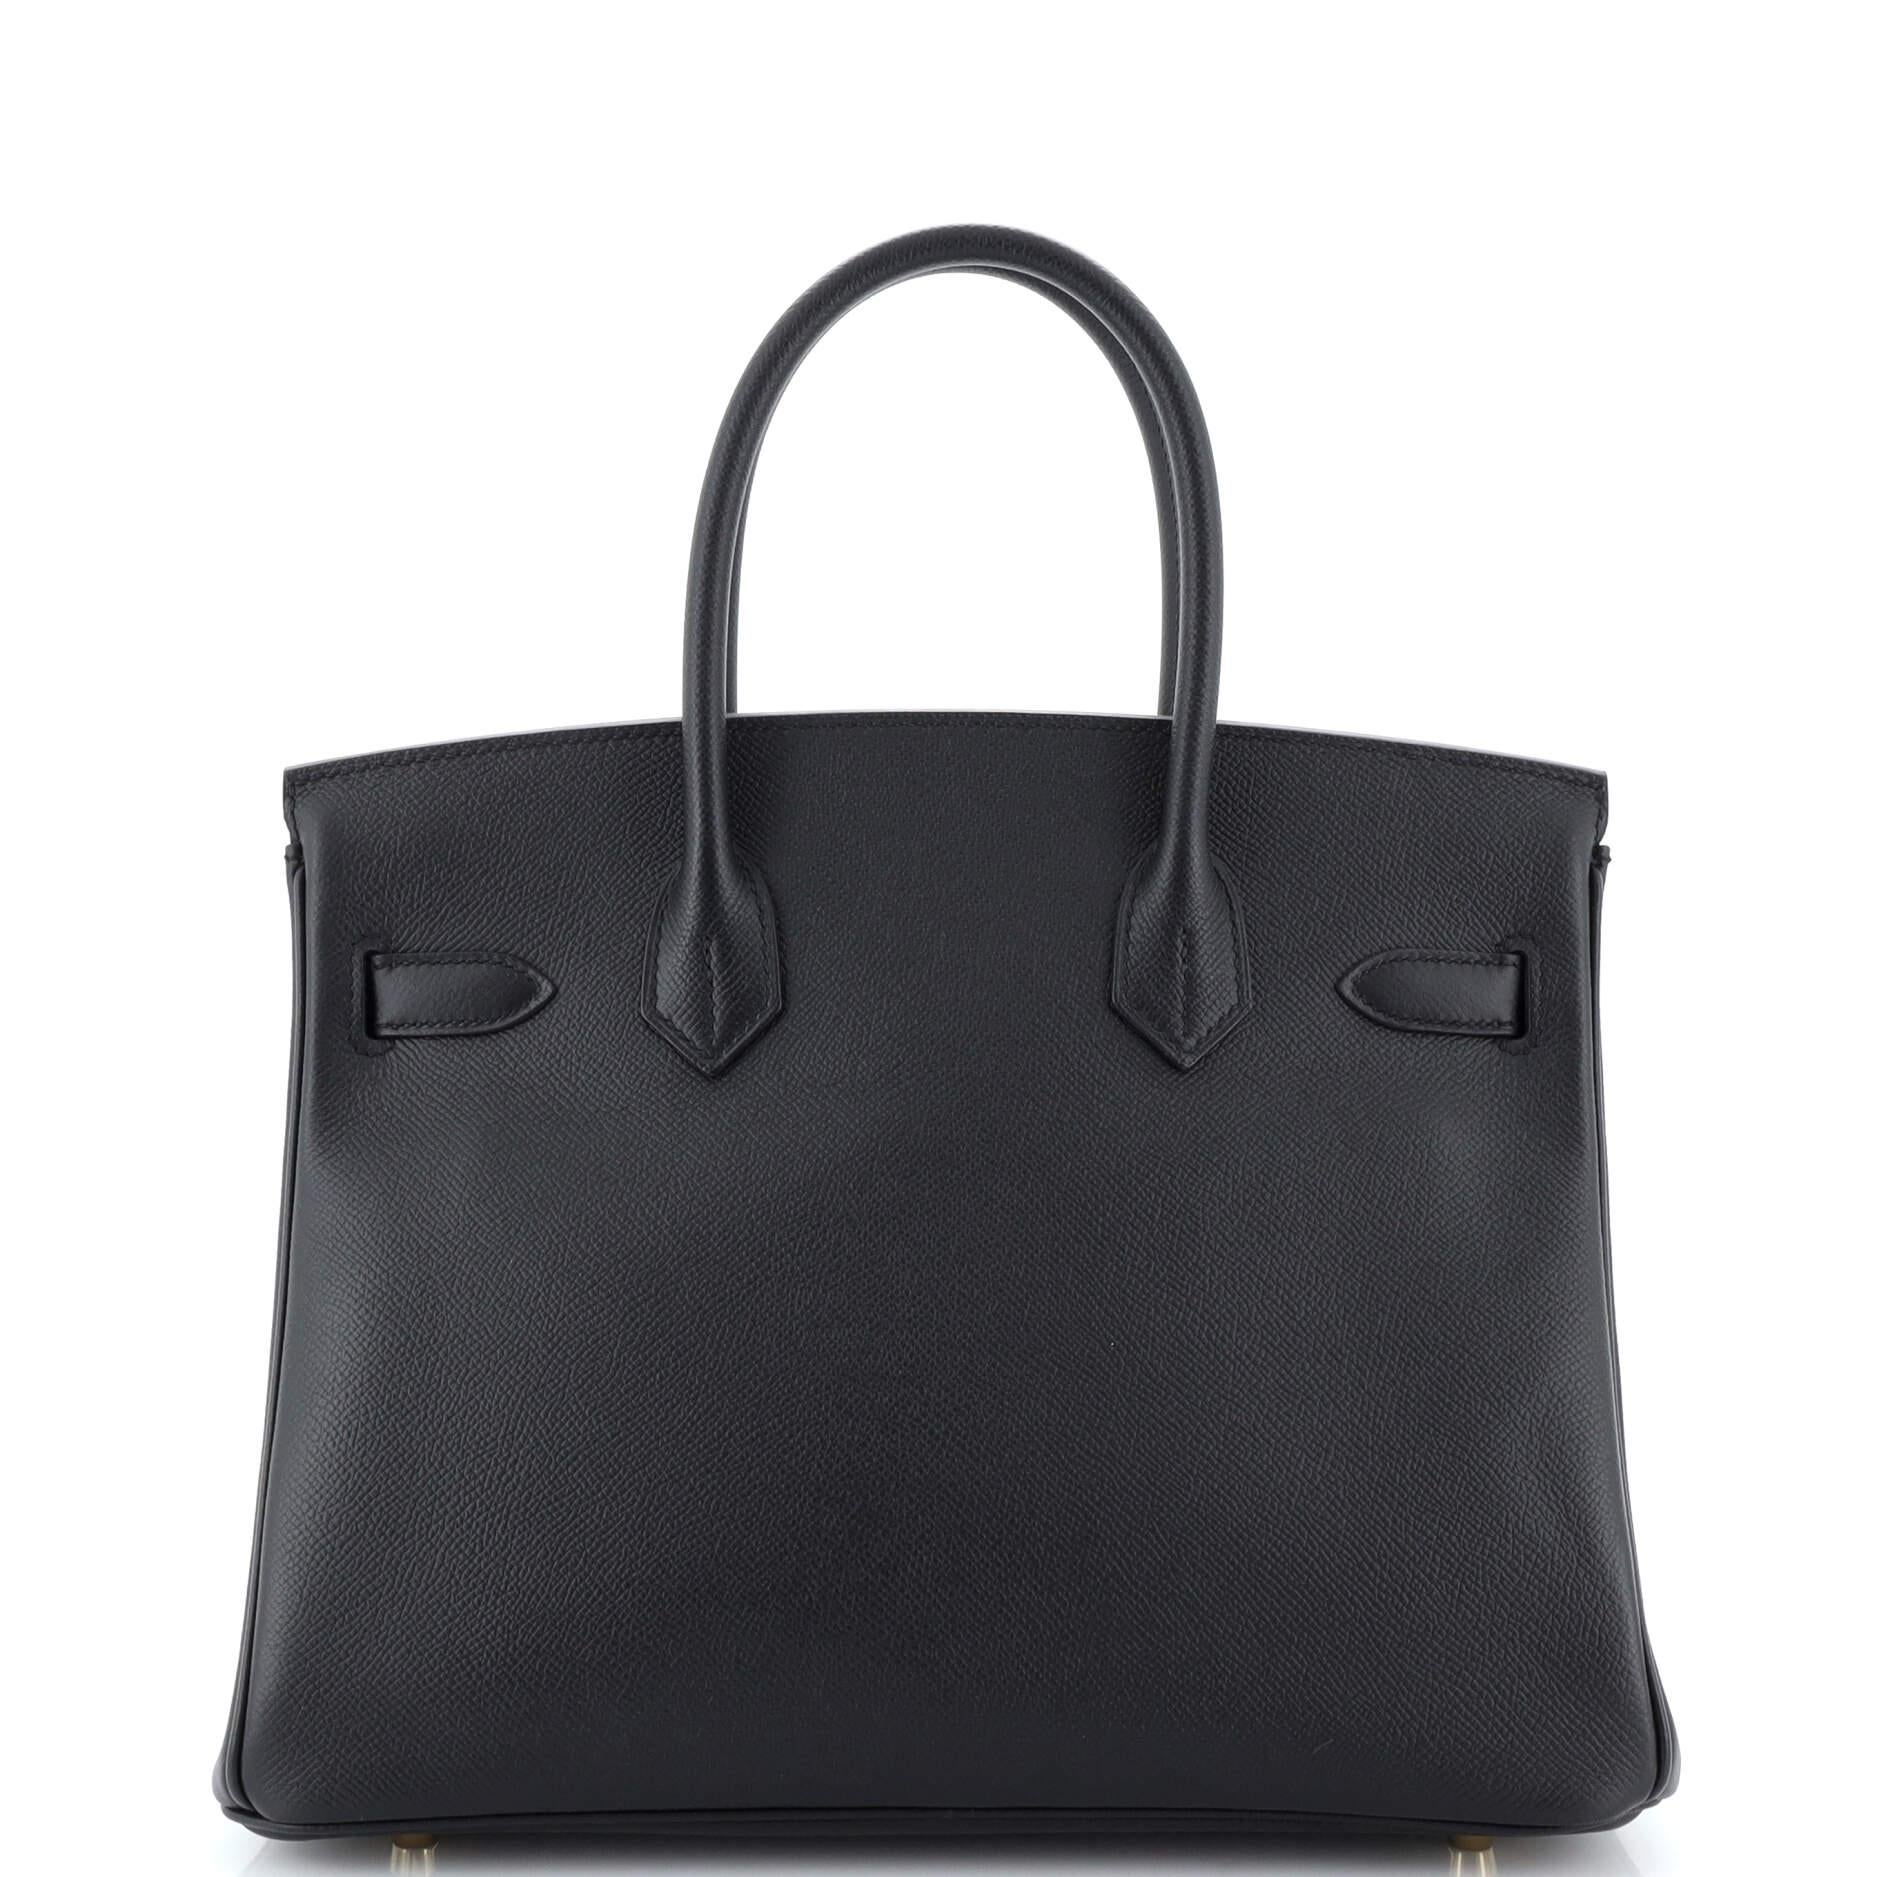 Women's or Men's Hermes Birkin Handbag Noir Epsom with Gold Hardware 30